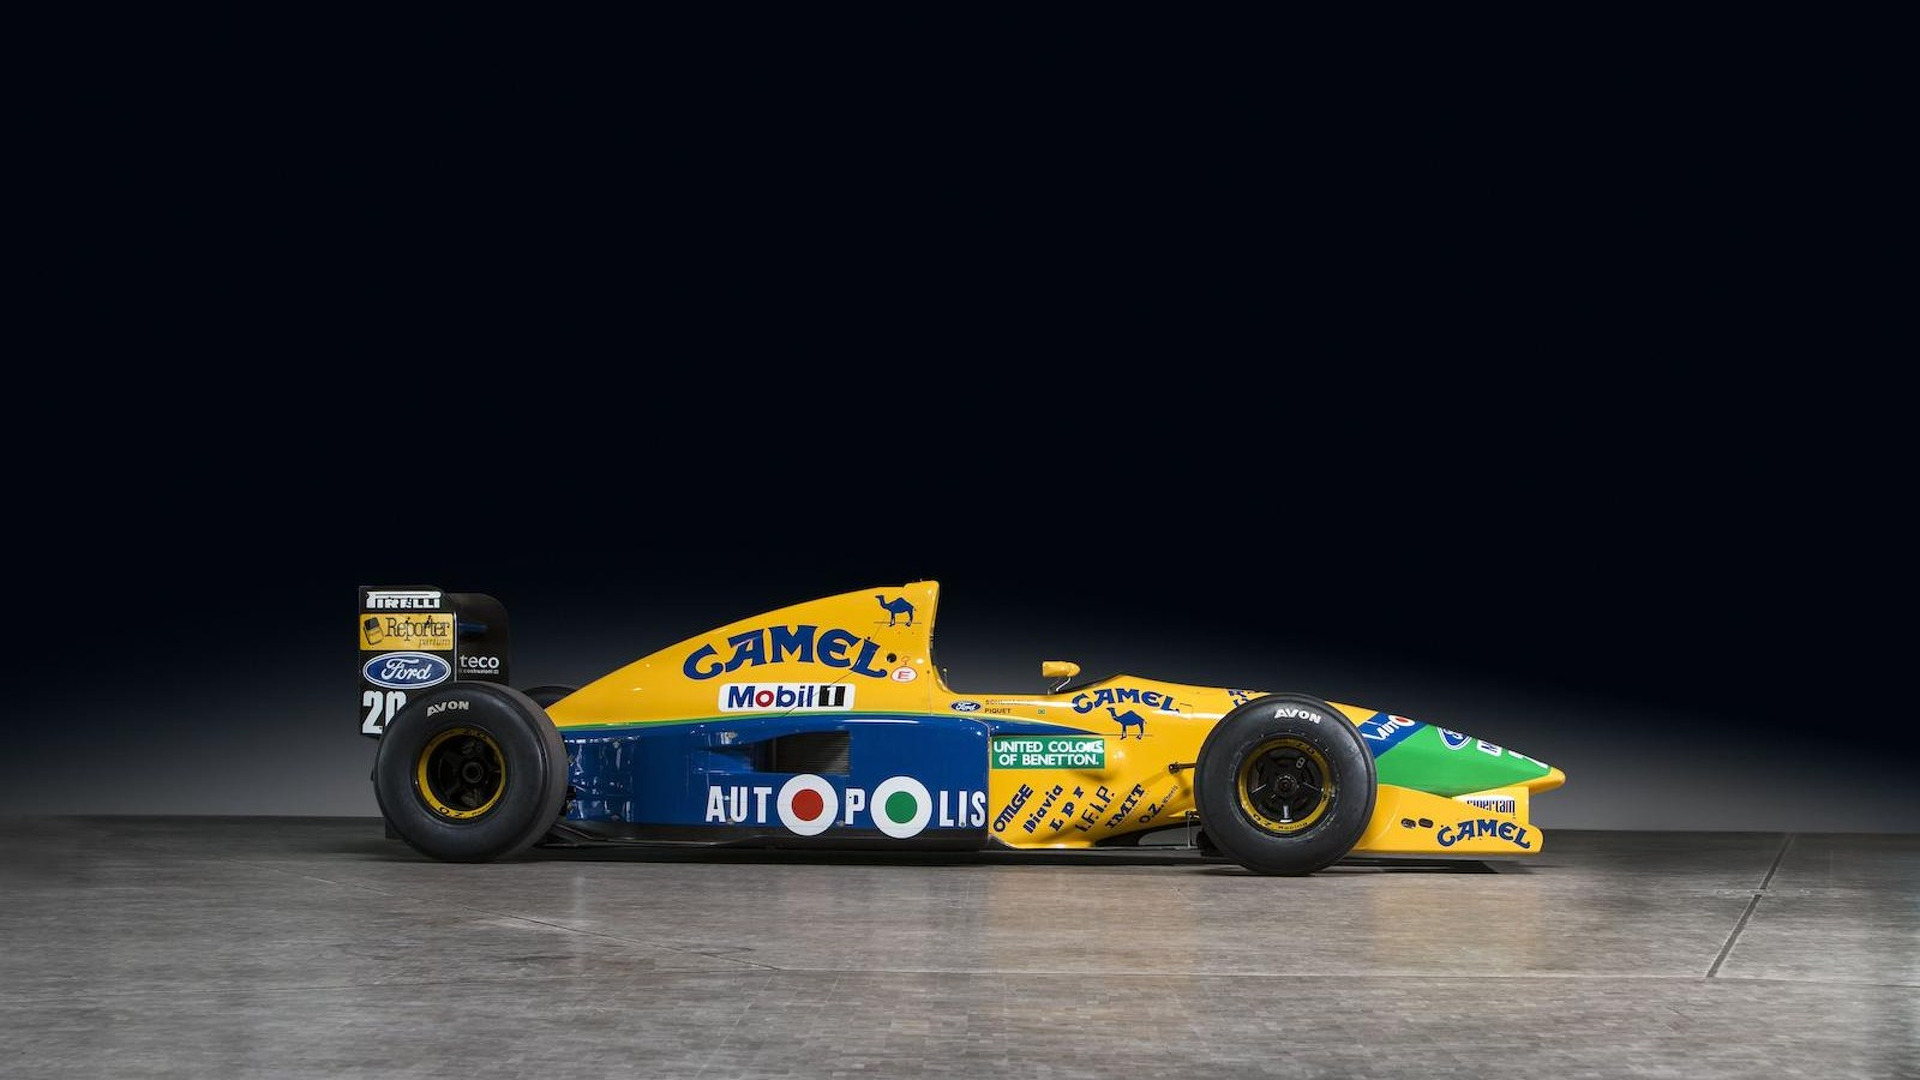  Benetton F1 1991                      